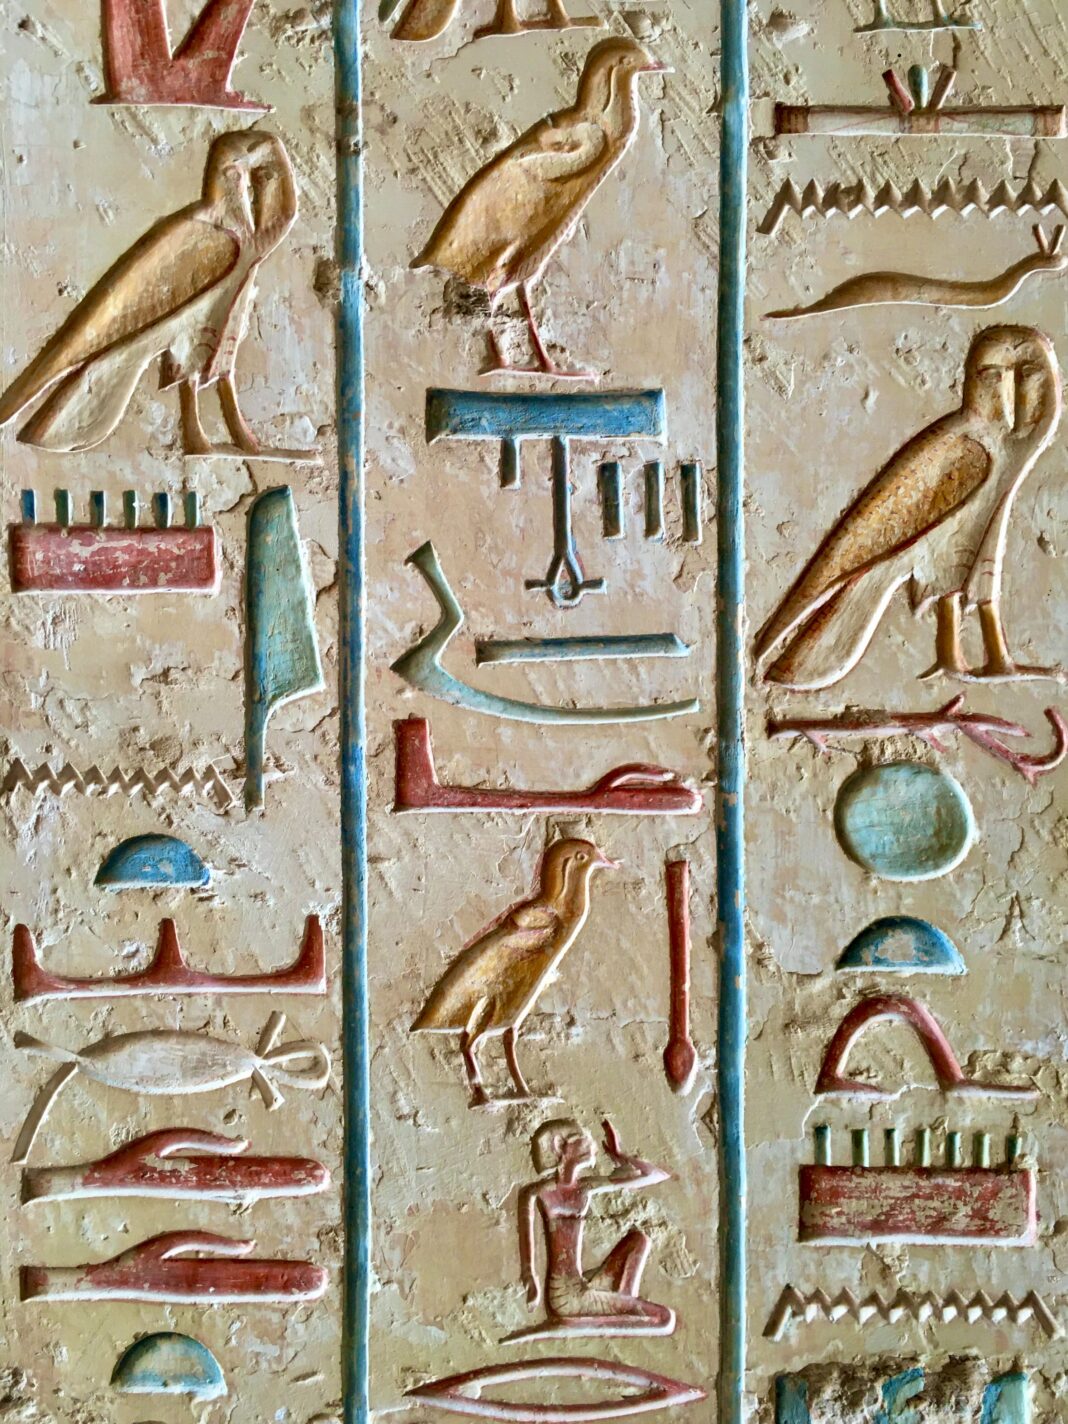 Arqueólogos descobriram o túmulo de um escriba real perto do Cairo